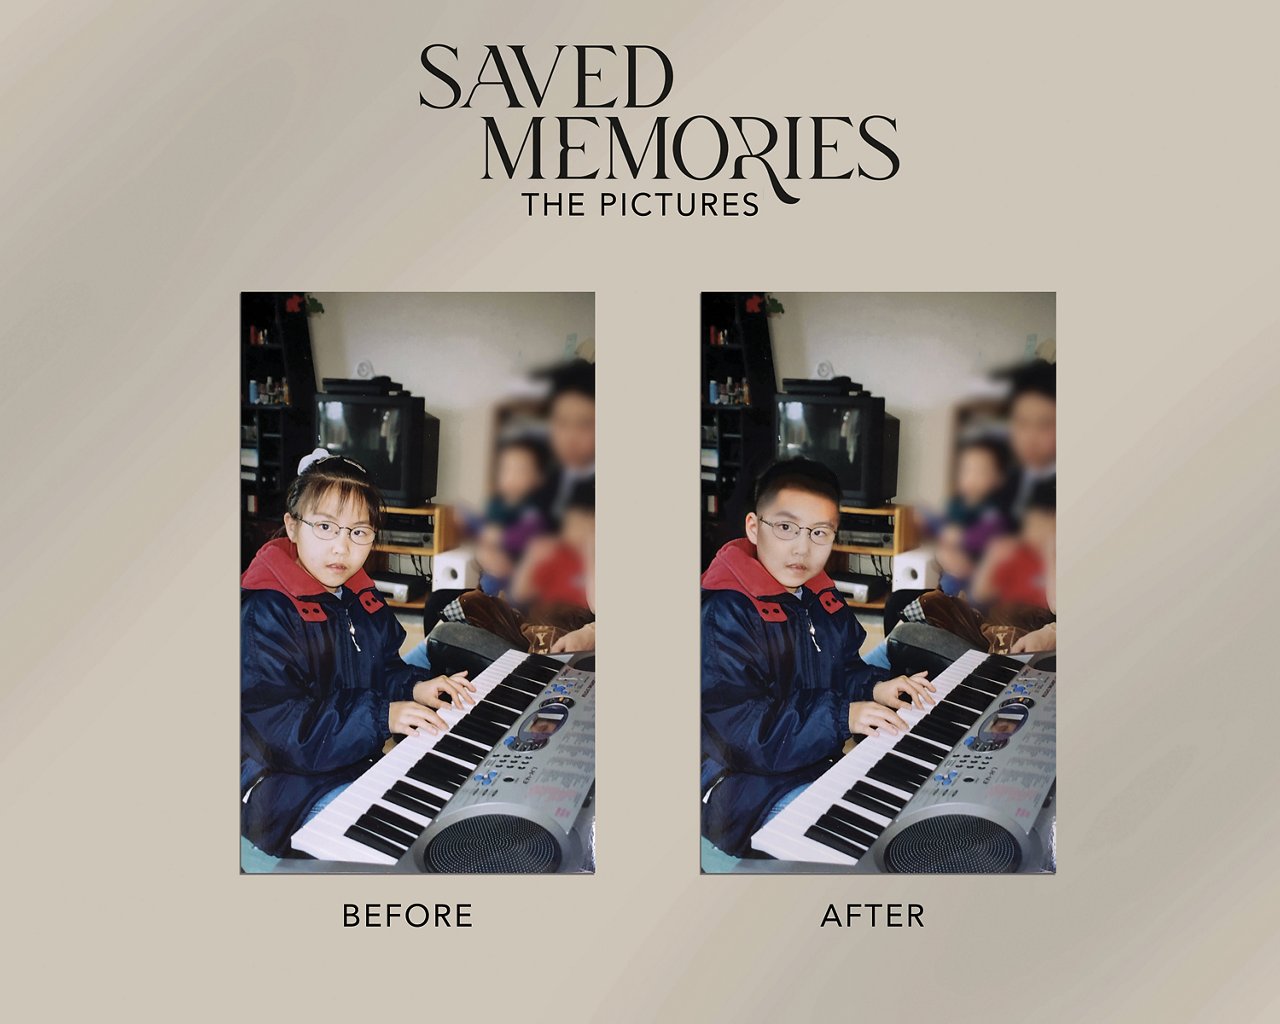 Transklar e.V. - Saved Memories